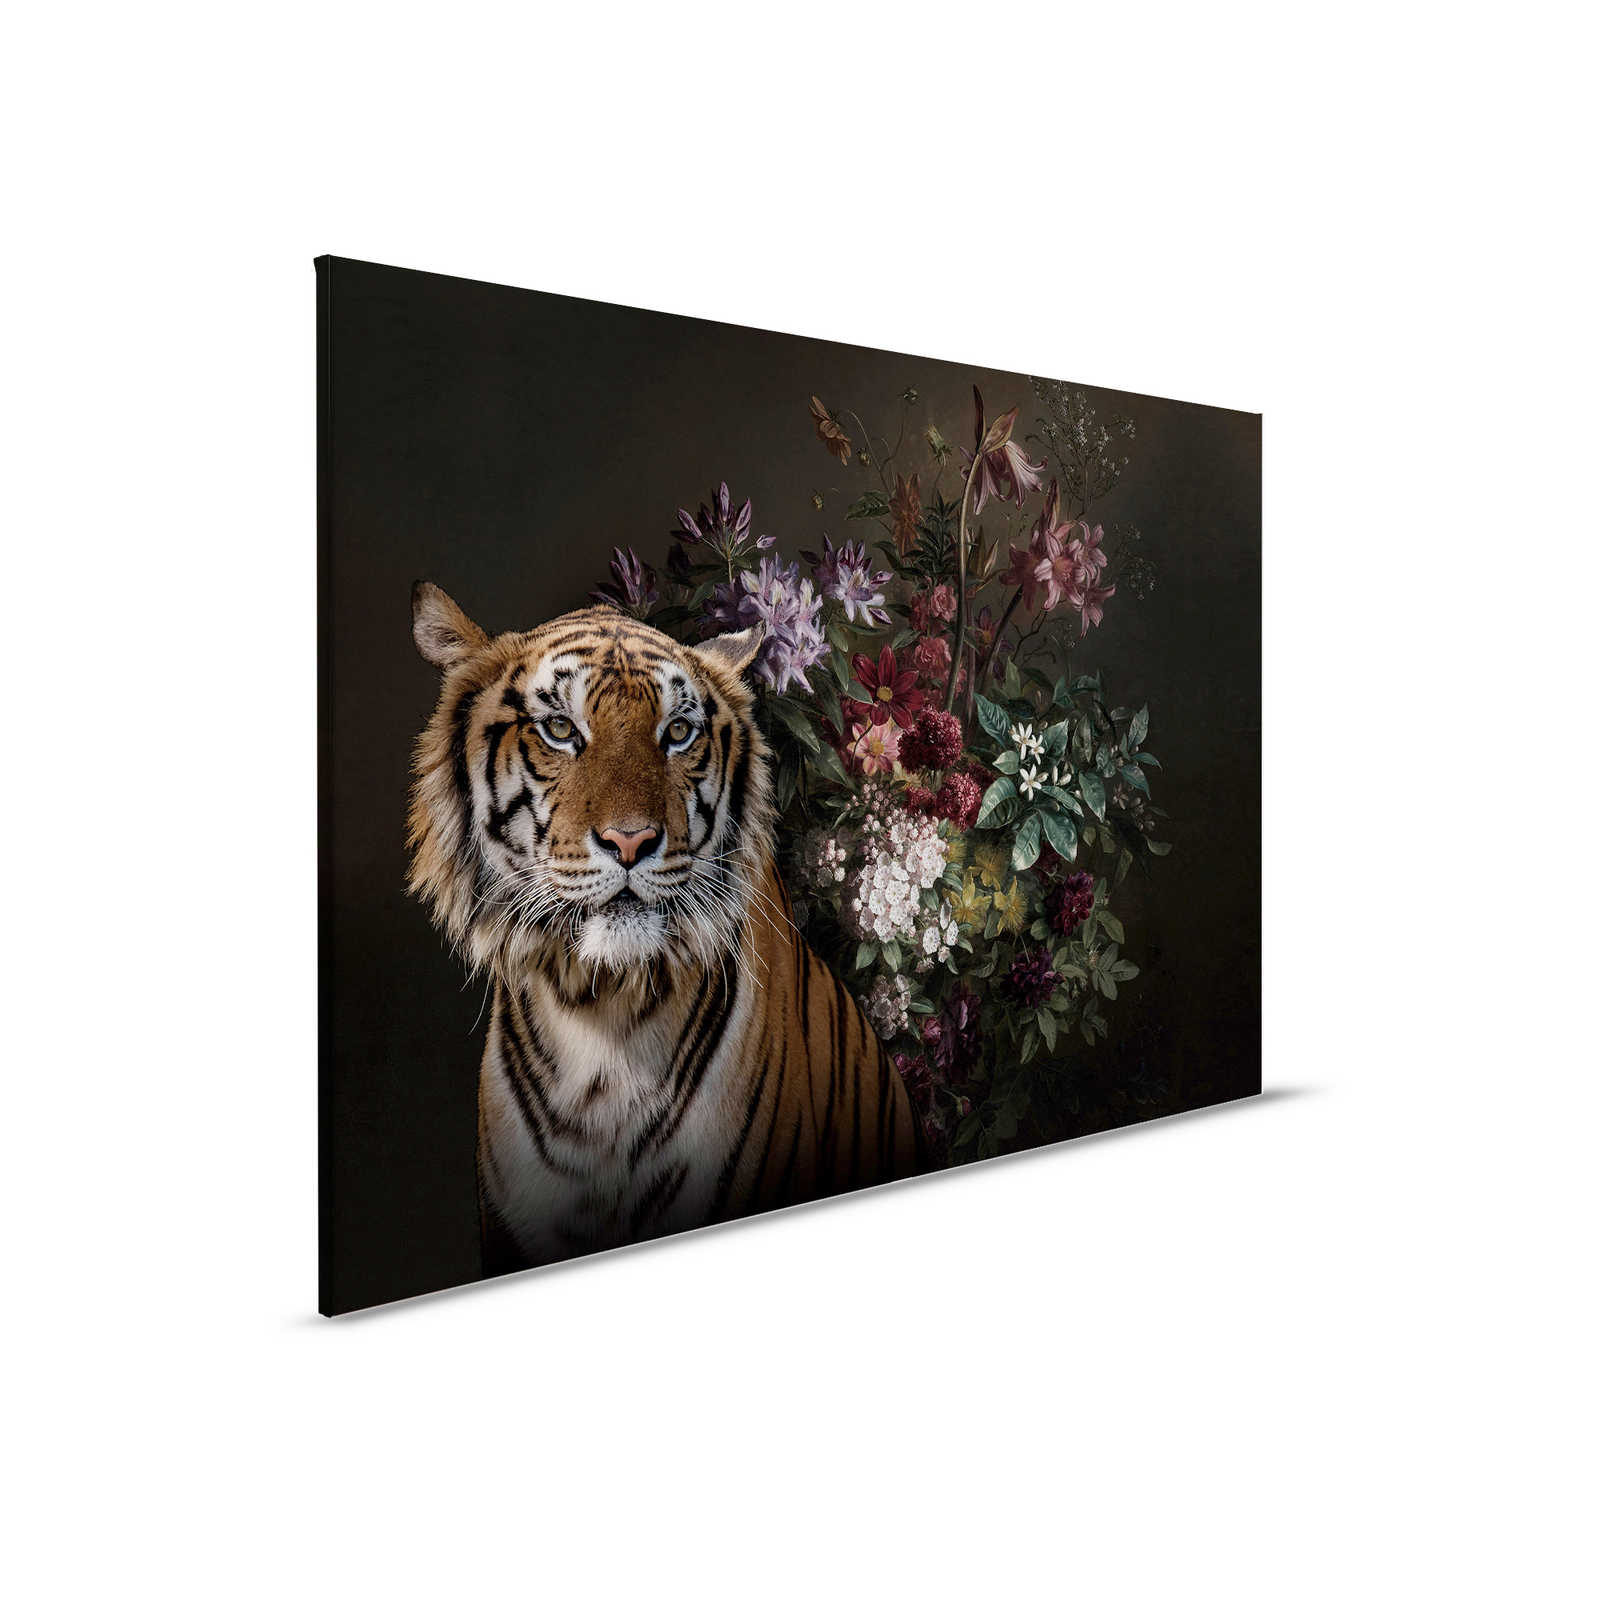 Cuadro en lienzo Retrato de tigre con flores - 0,90 m x 0,60 m
